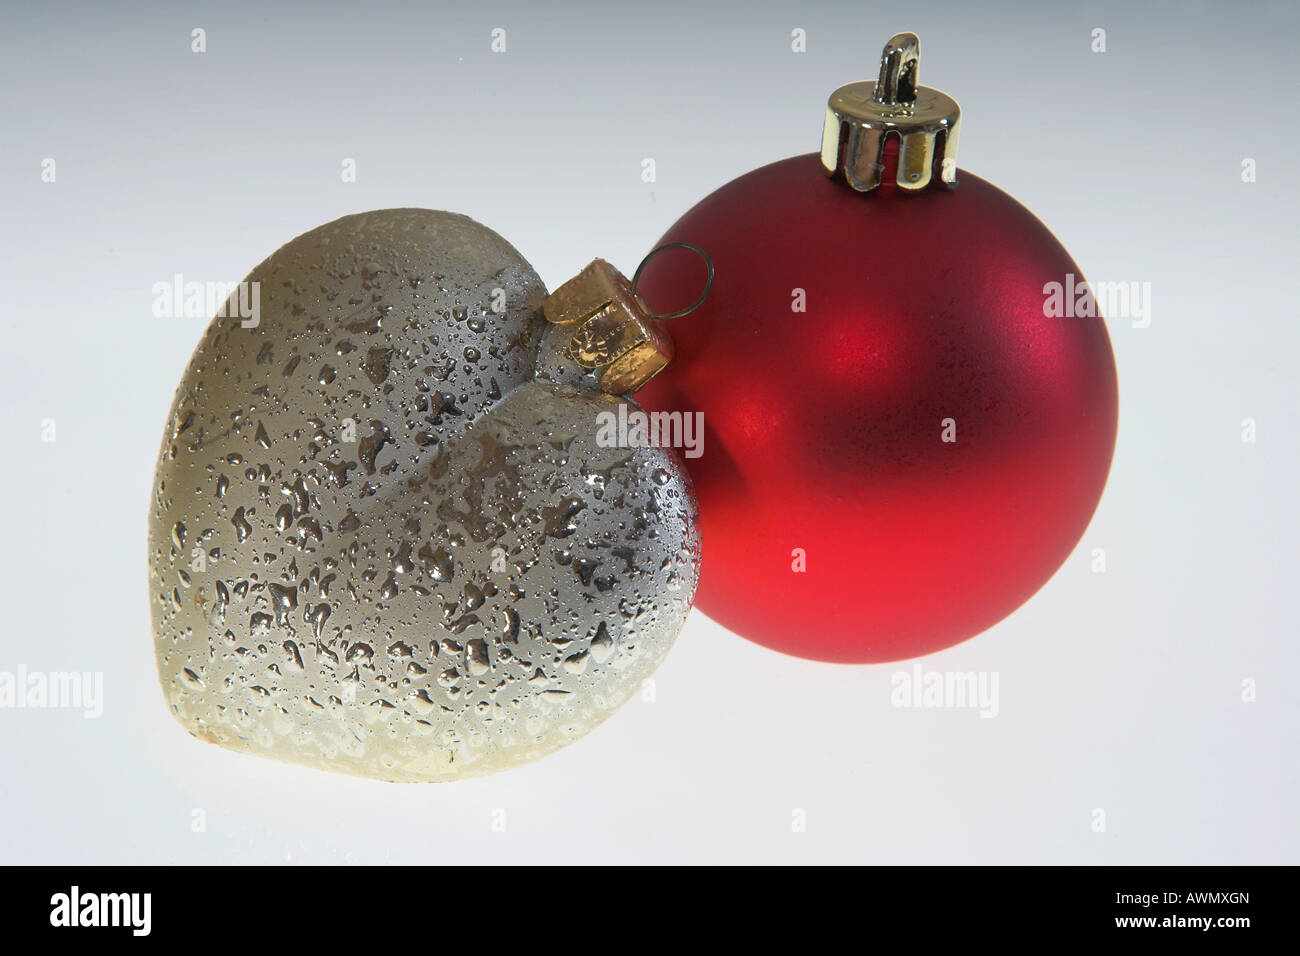 Christmas balls. Stock Photo